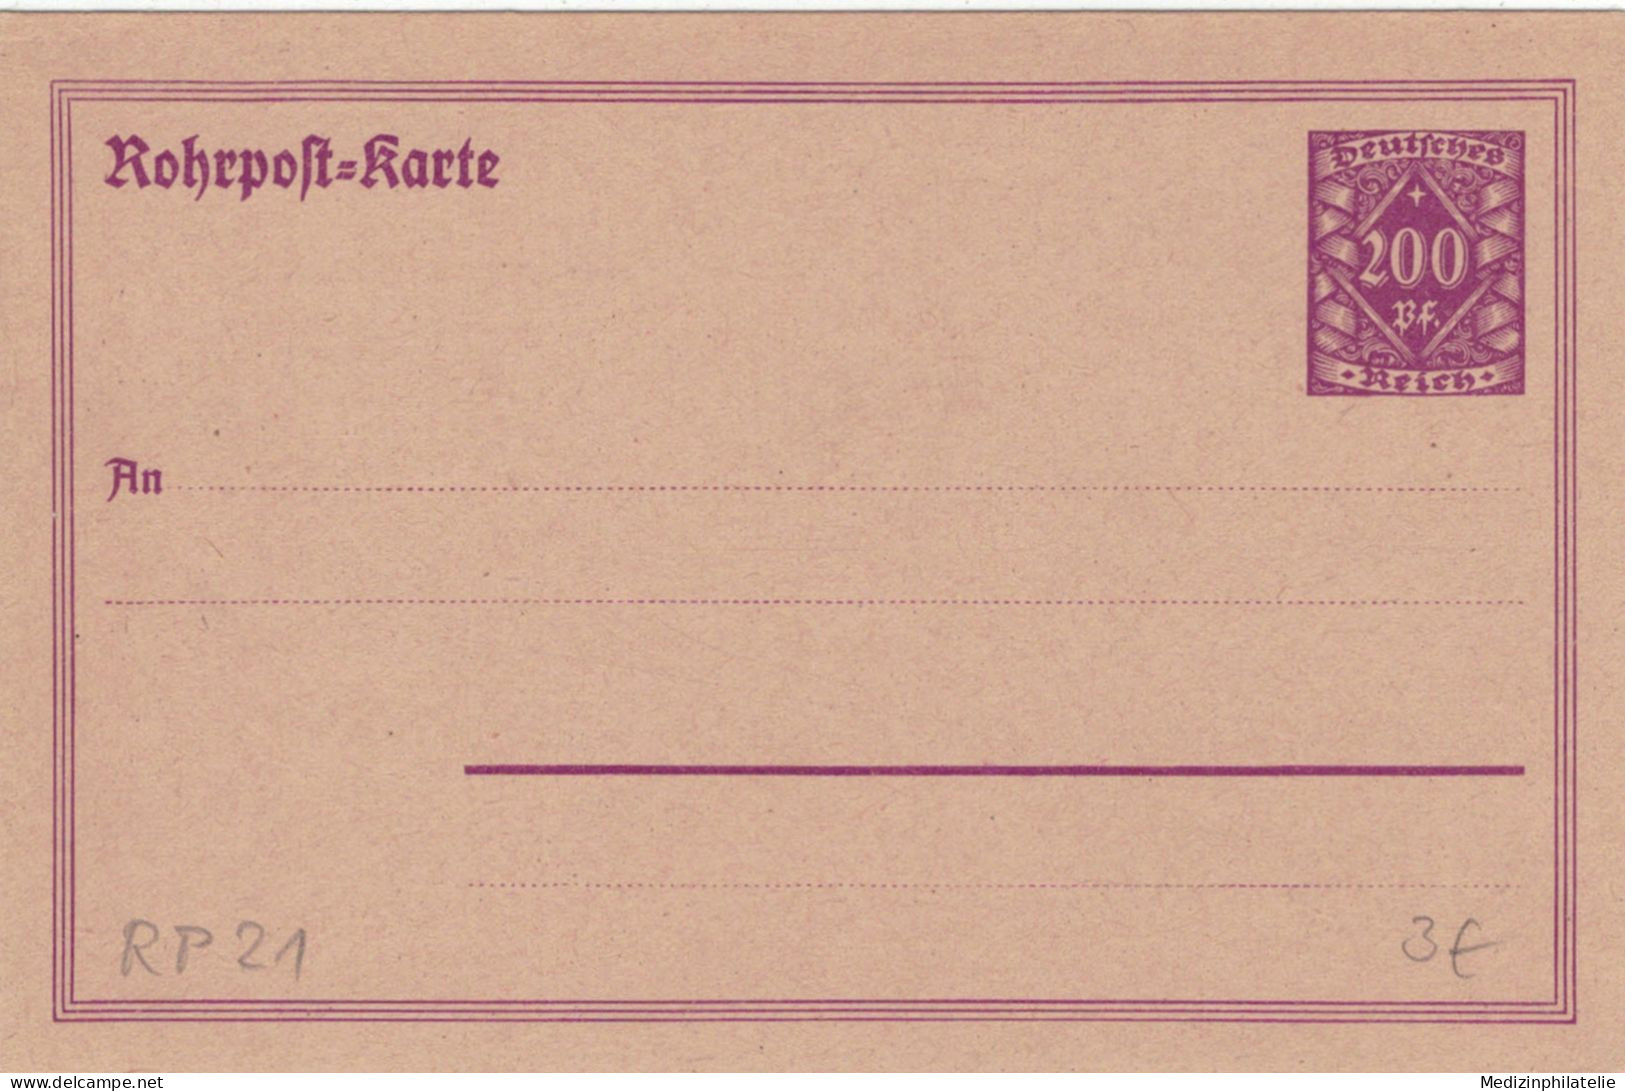 Rohrpost-Karte 200 Pf. Grosse Wertziffer In Raute - Ungebraucht - Cartoline